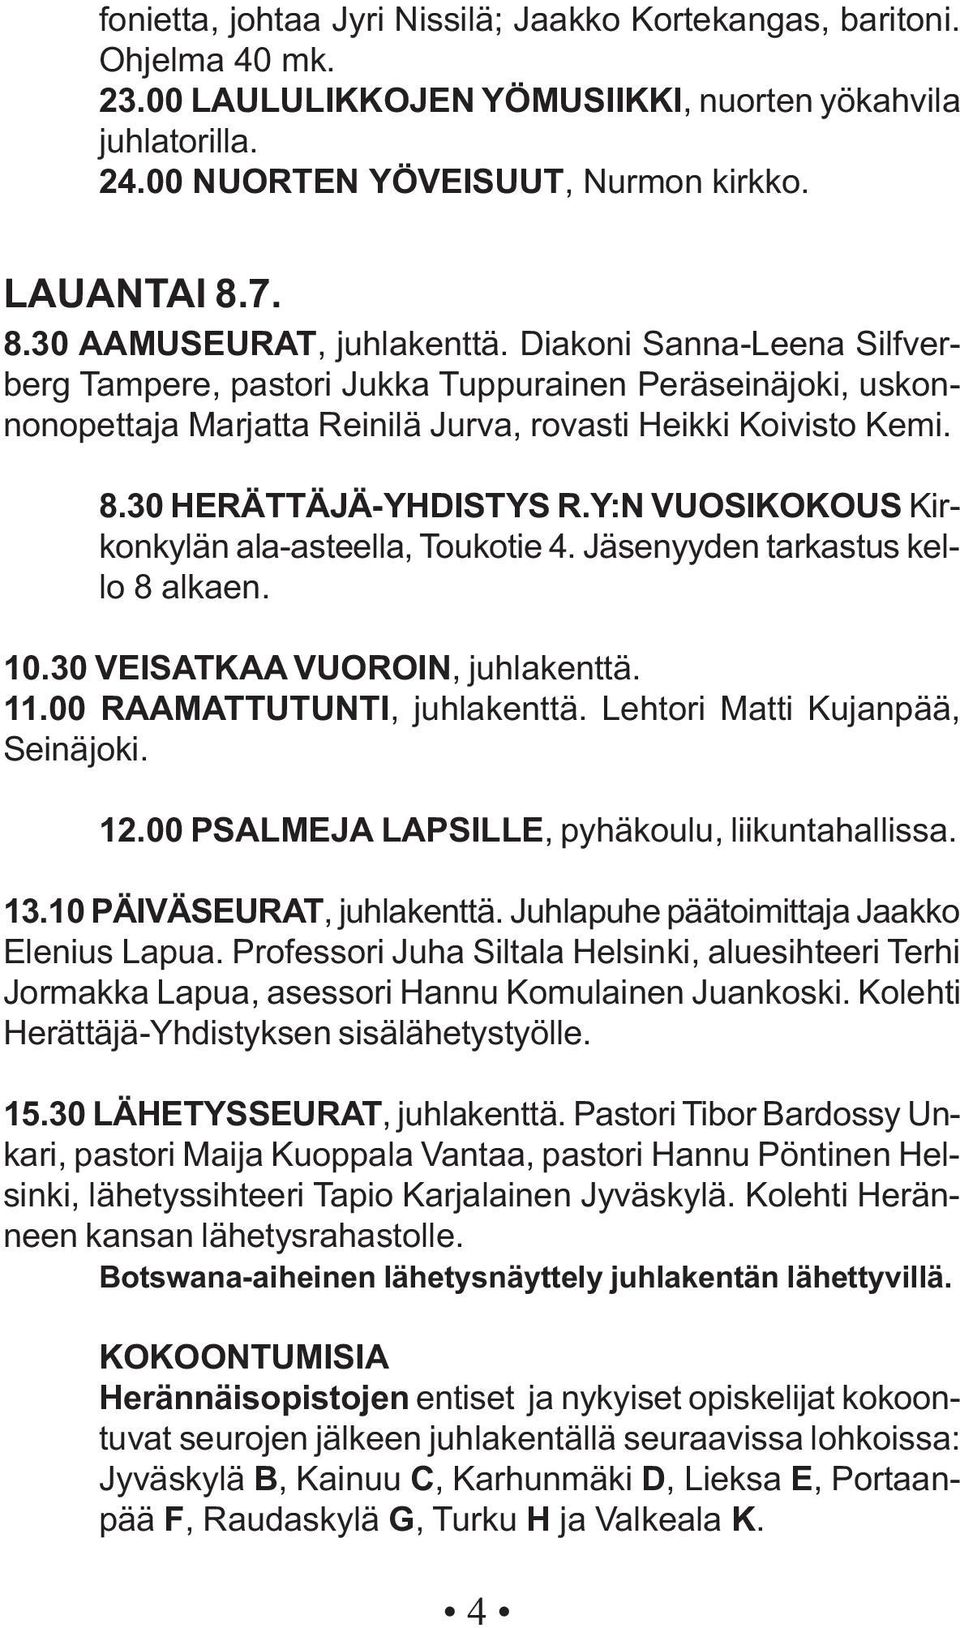 Y:N VUOSIKOKOUS Kirkonkylän ala-asteella, Toukotie 4. Jäsenyyden tarkastus kello 8 alkaen. 10.30 VEISATKAA VUOROIN, juhlakenttä. 11.00 RAAMATTUTUNTI, juhlakenttä. Lehtori Matti Kujanpää, Seinäjoki.